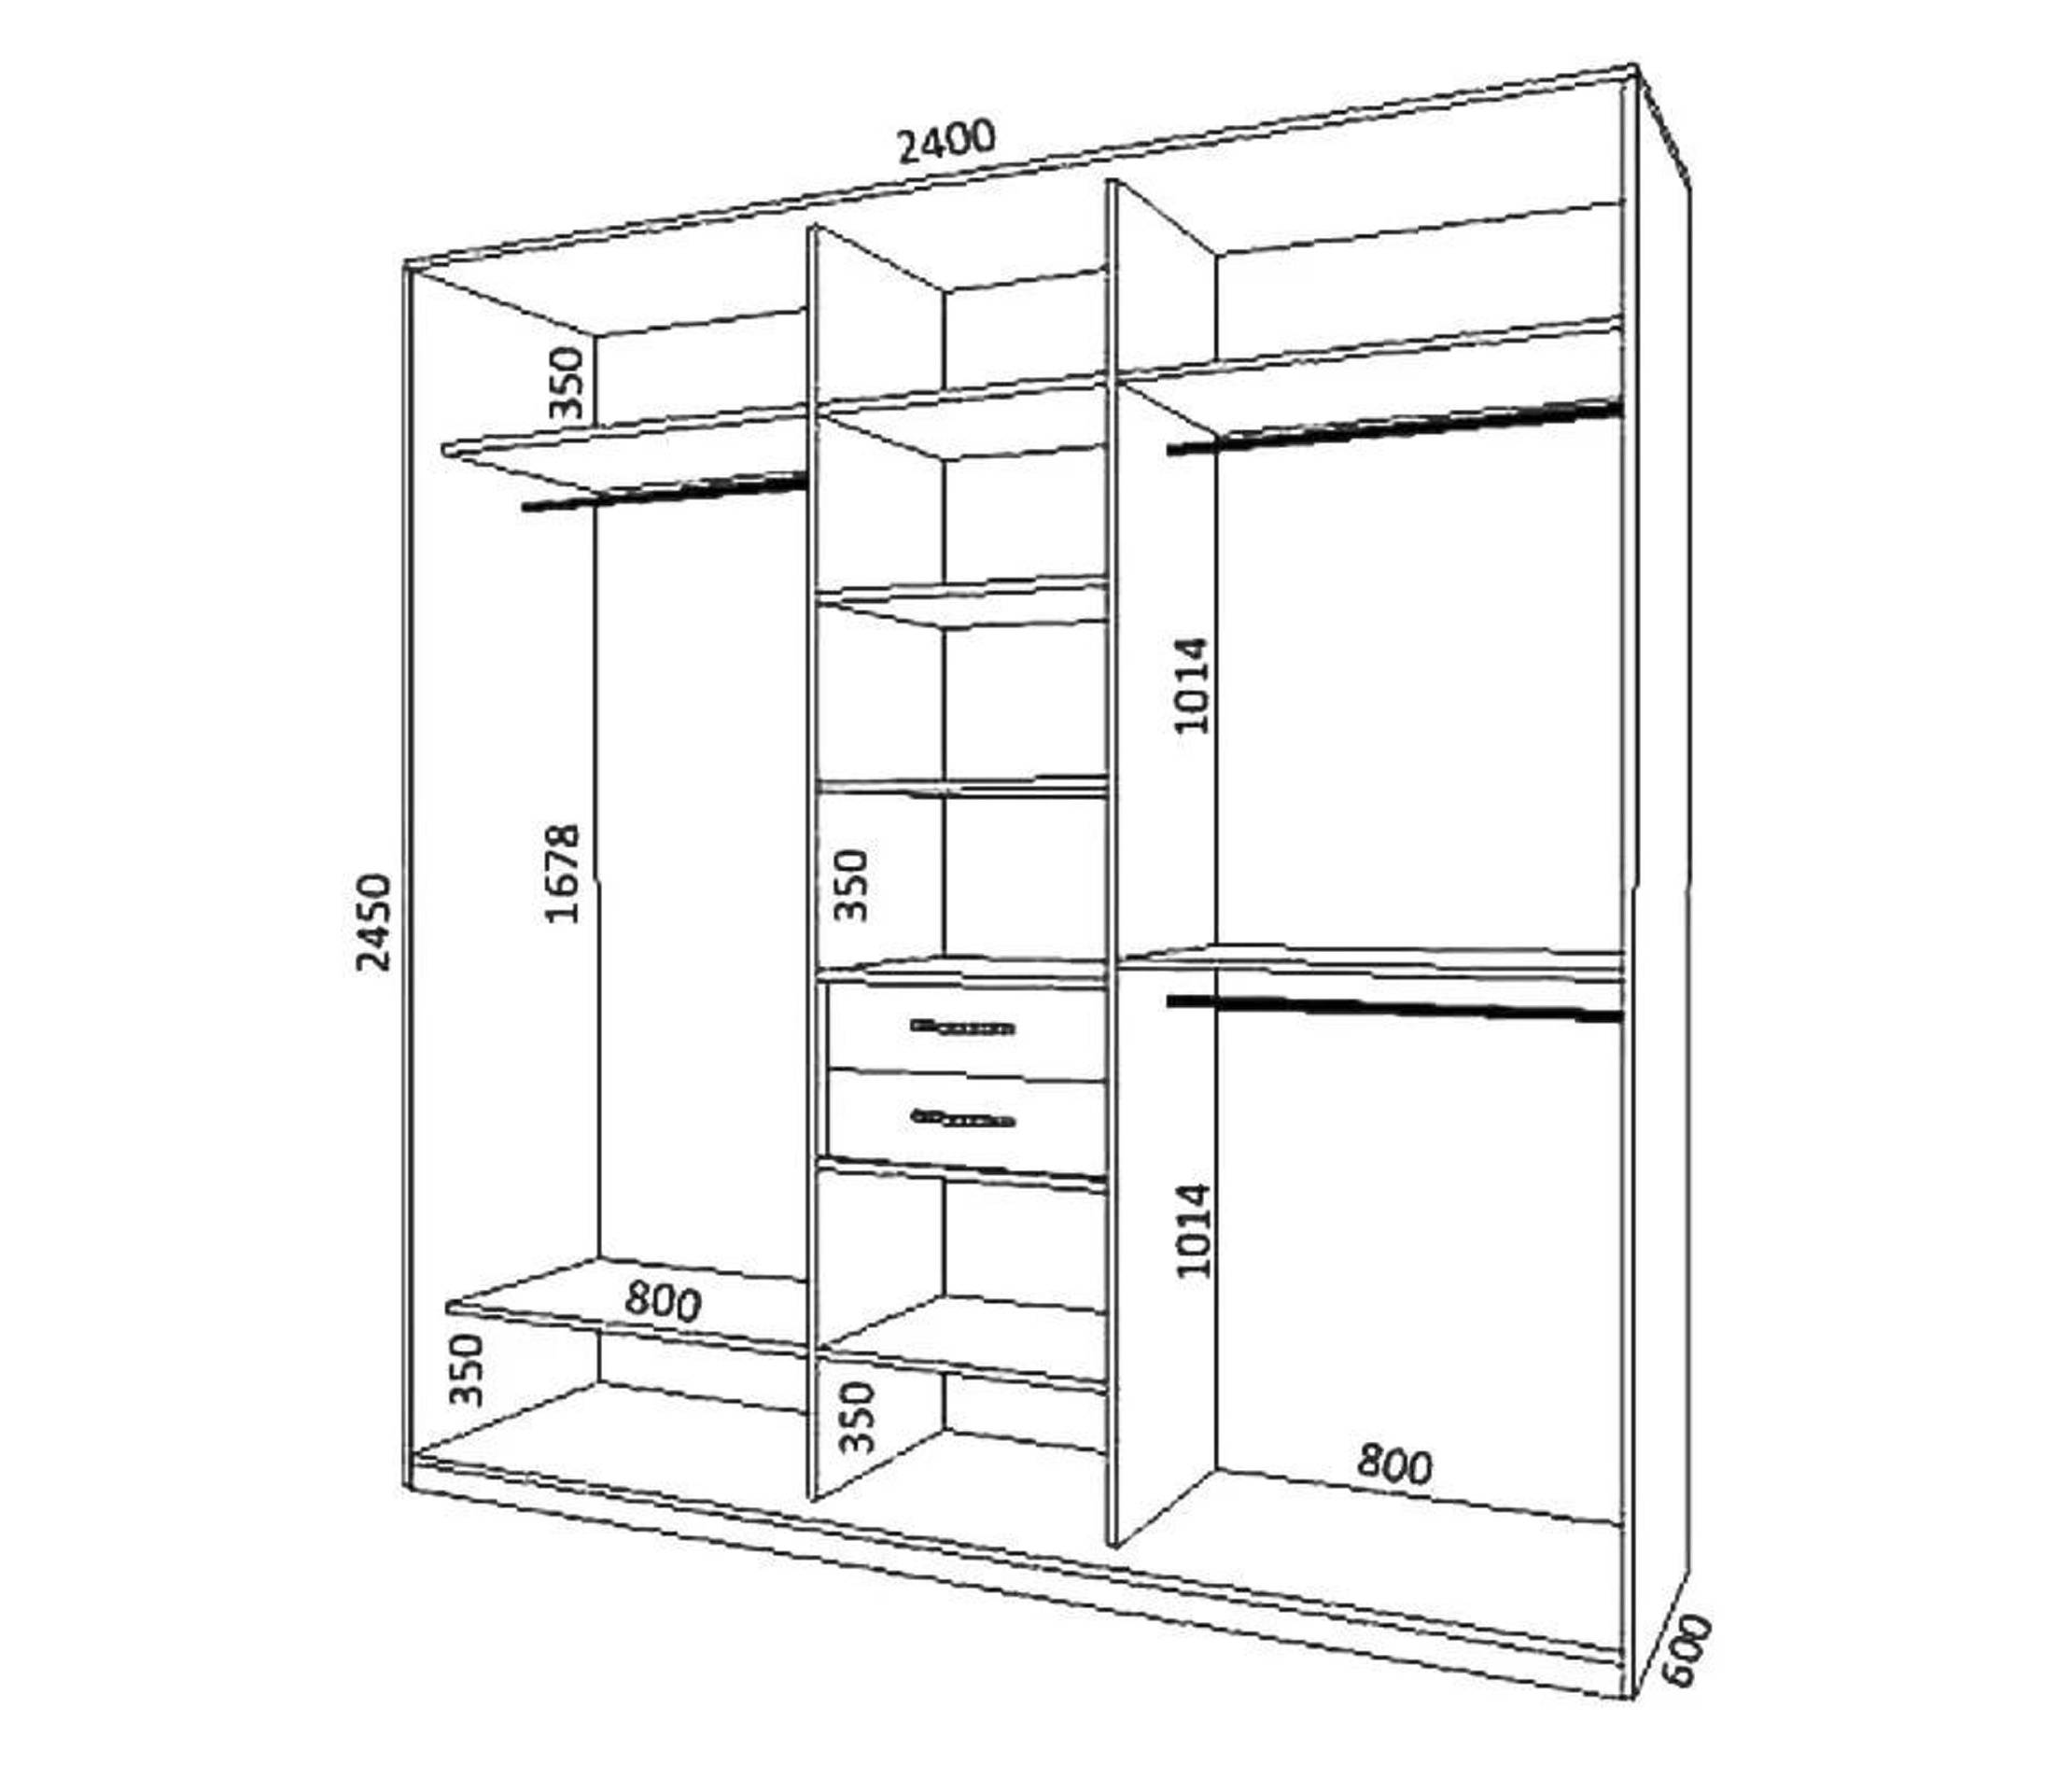 Как сделать шкаф купе от а до я: пошаговая инструкция как спроектировать и собрать в домашних условиях шкаф-купе